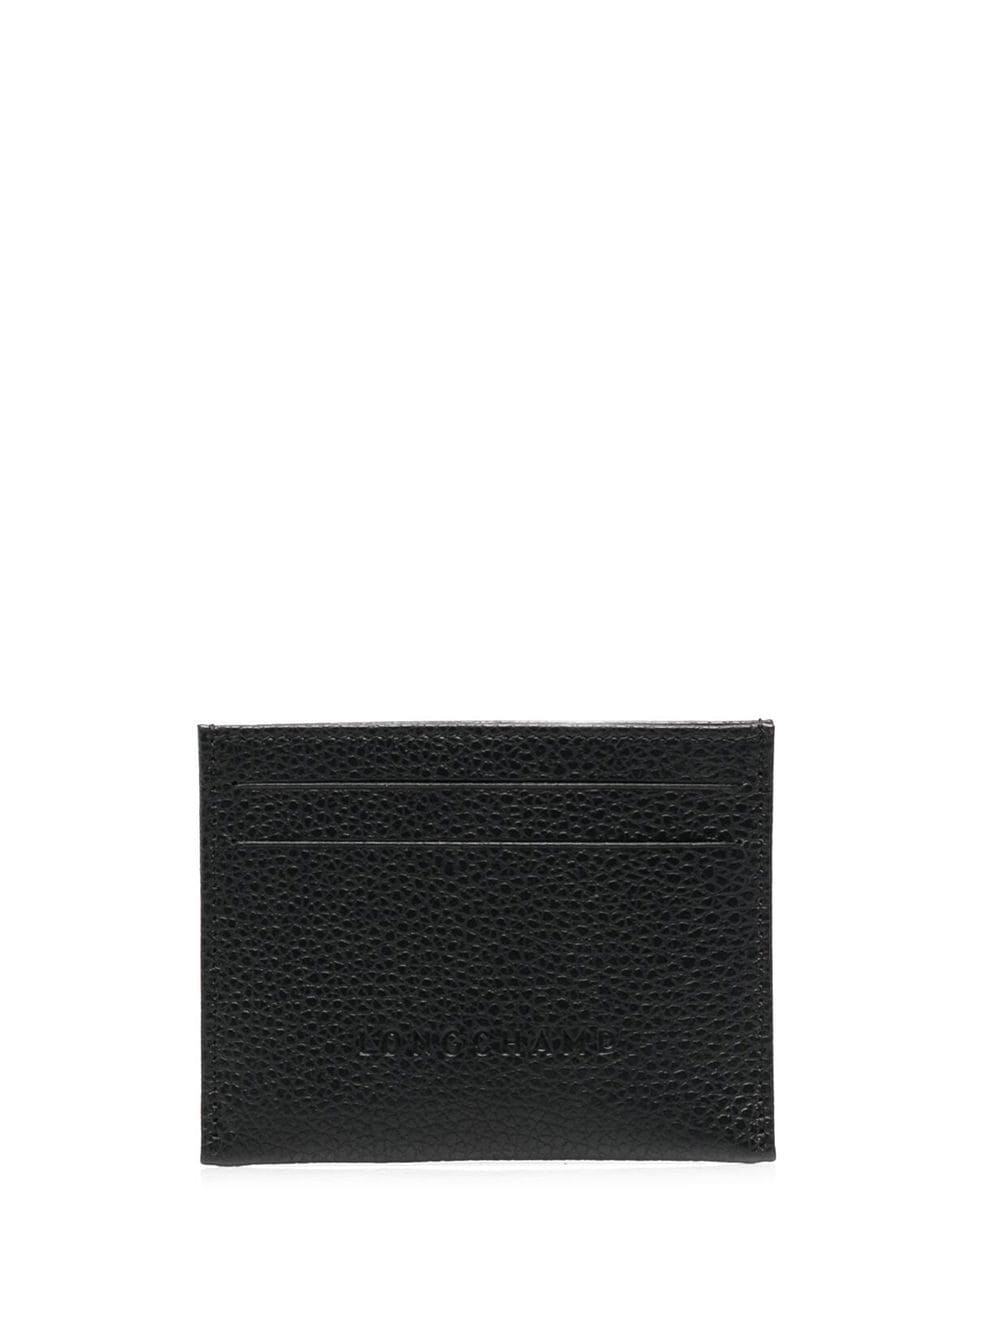 Longchamp Le Foulonné leather cardholder - Black von Longchamp